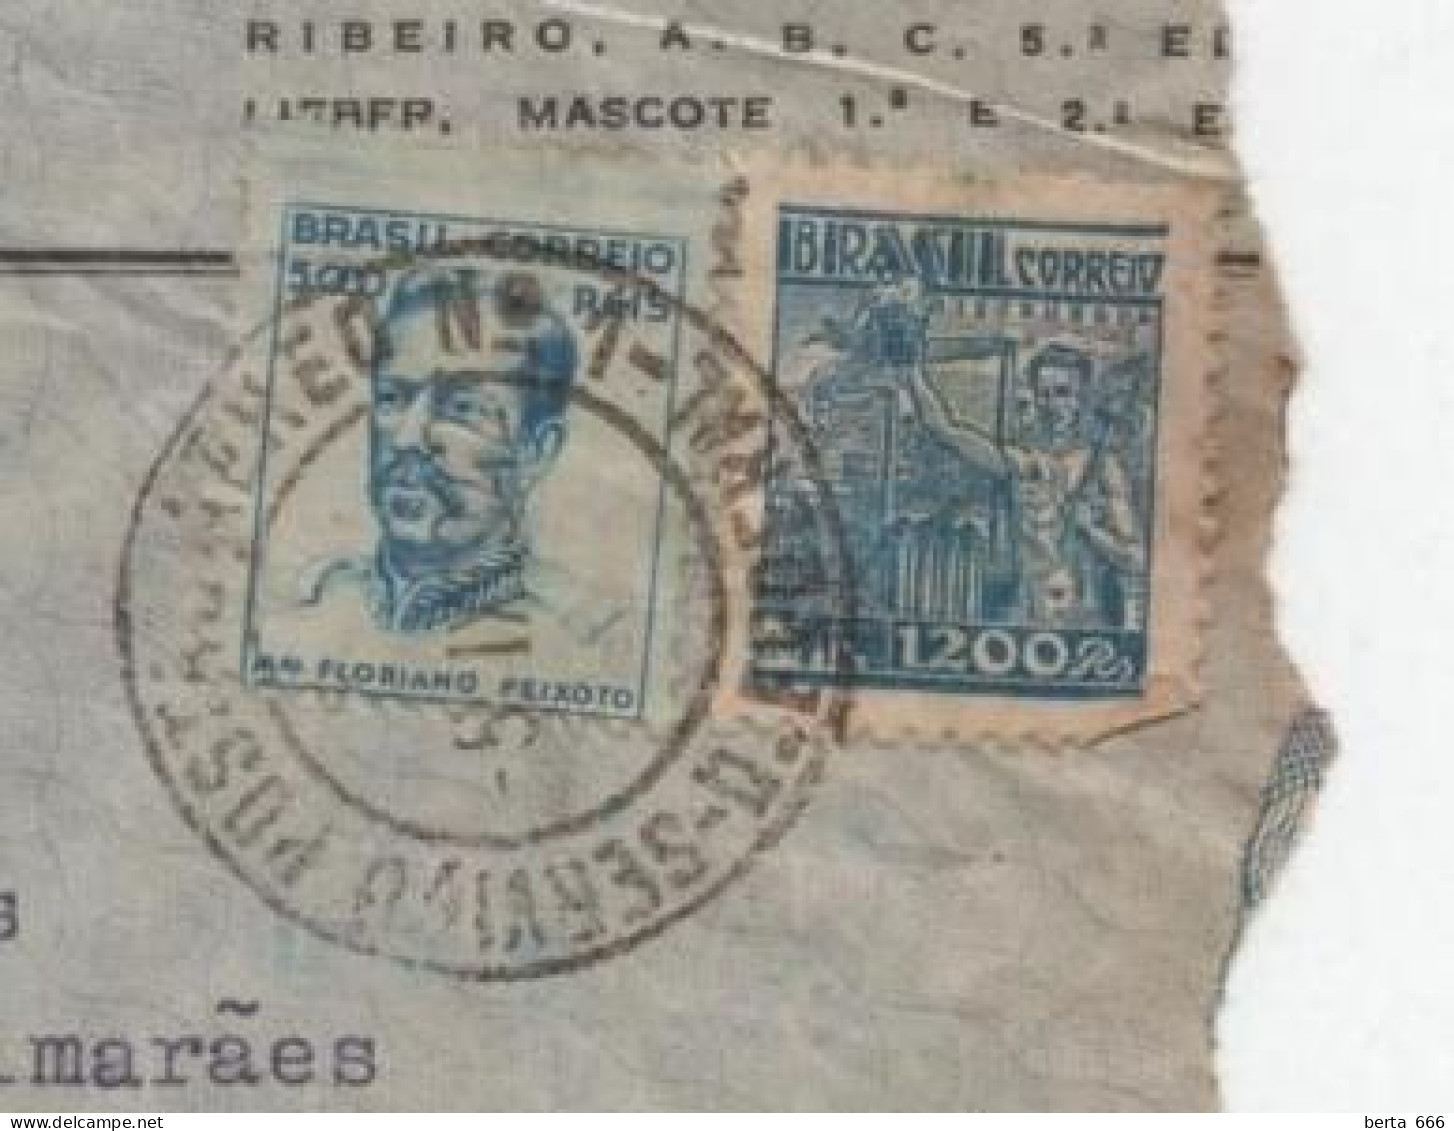 Banco Aliança Do Rio De Janeiro * Carta Circulada De Brasil A Portugal * 1942 - Briefe U. Dokumente